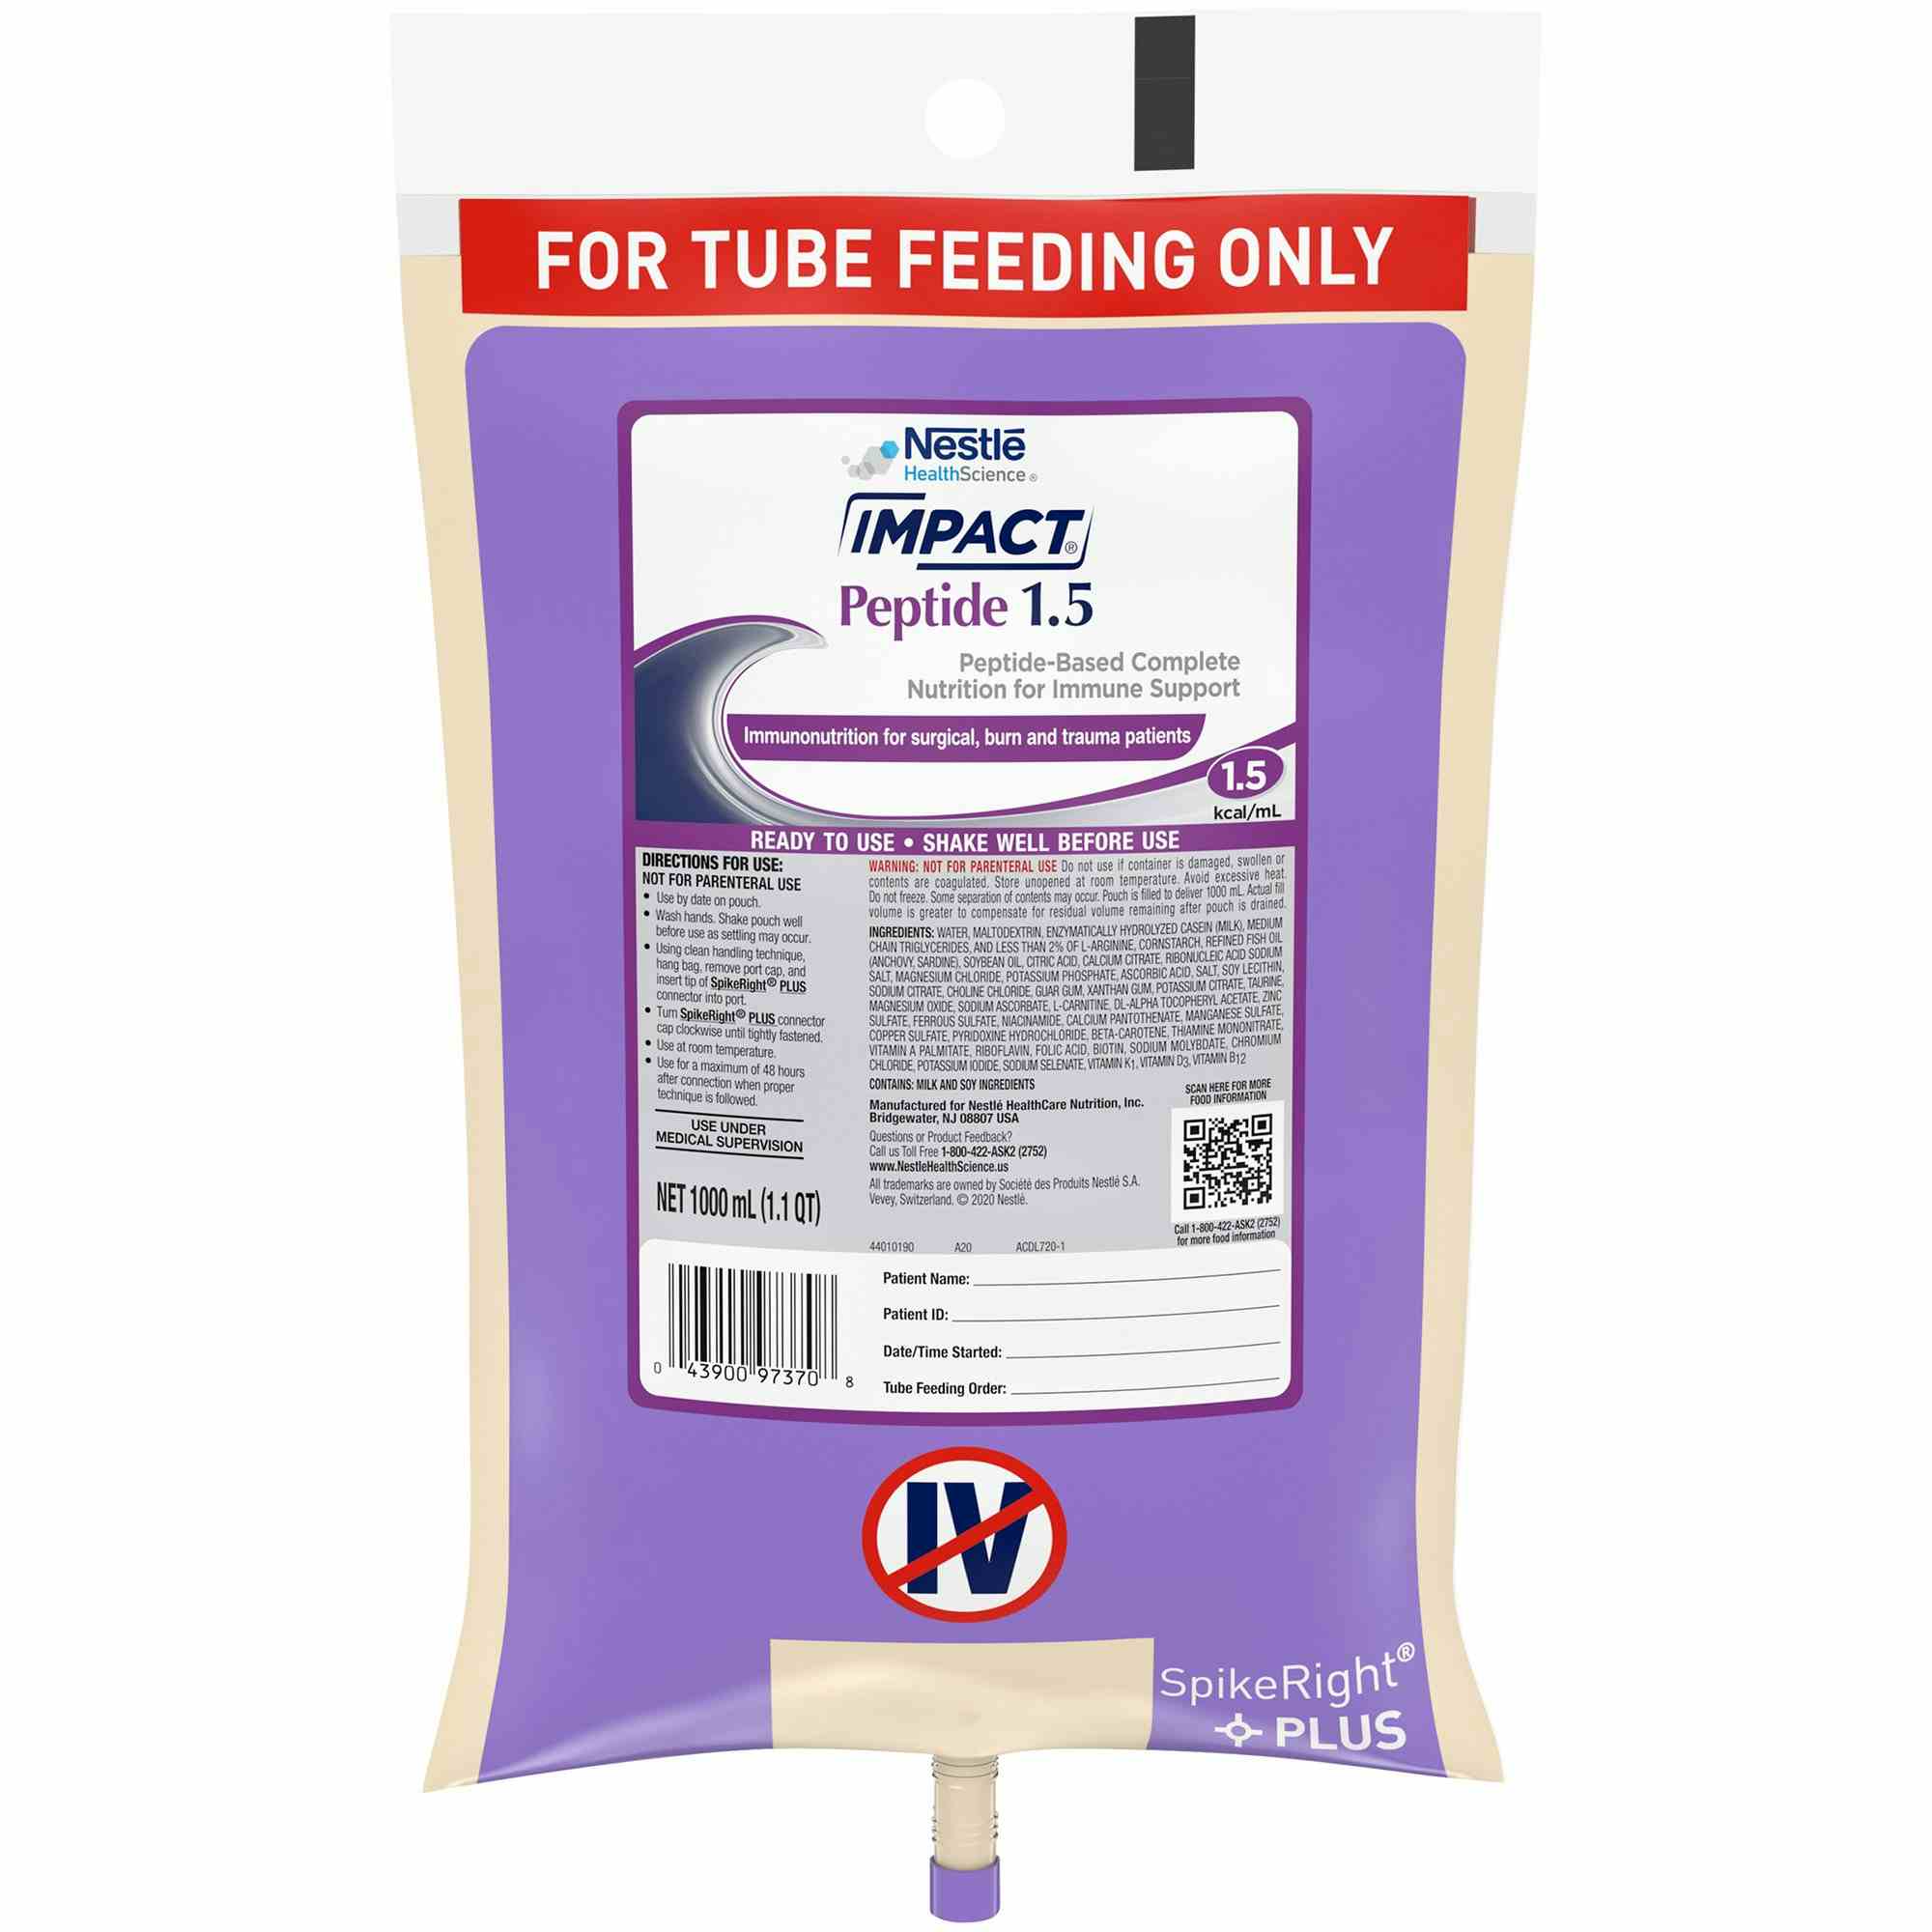 Nestle HealthScience Impact Peptide 1.5 Tube Feeding Formula, 33.8 oz., 10043900973712, Case of 6